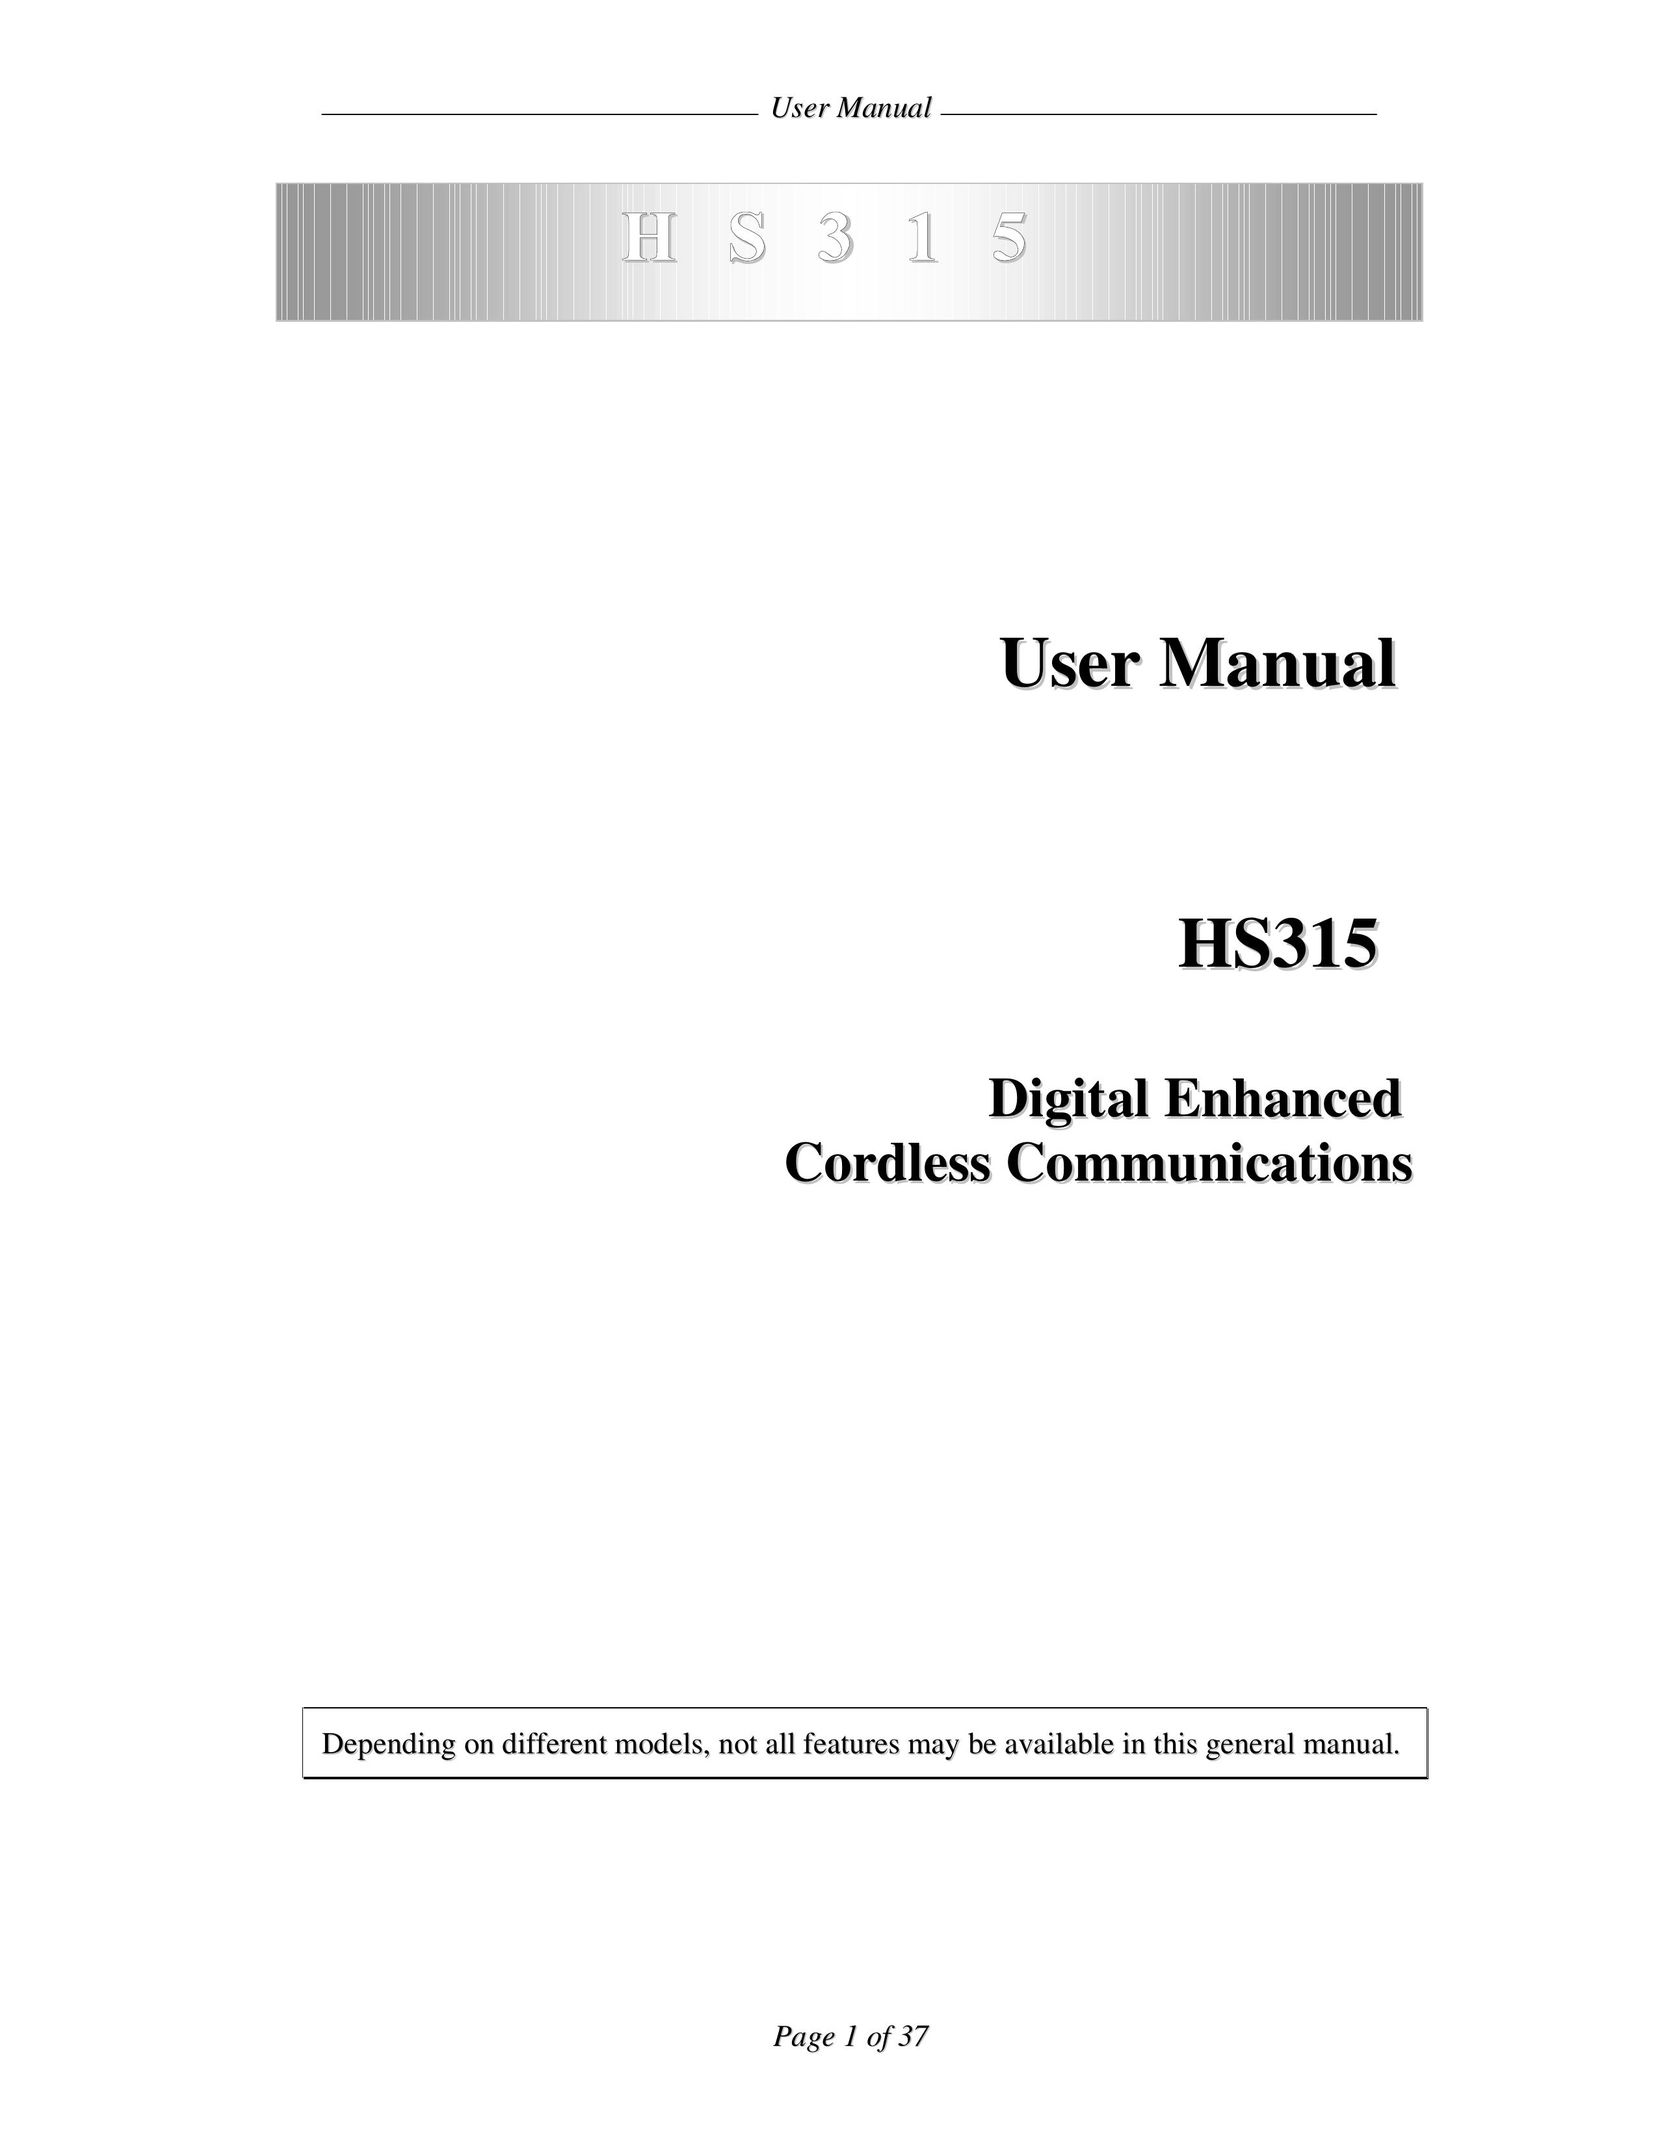 ANUBIS HS315 IP Phone User Manual